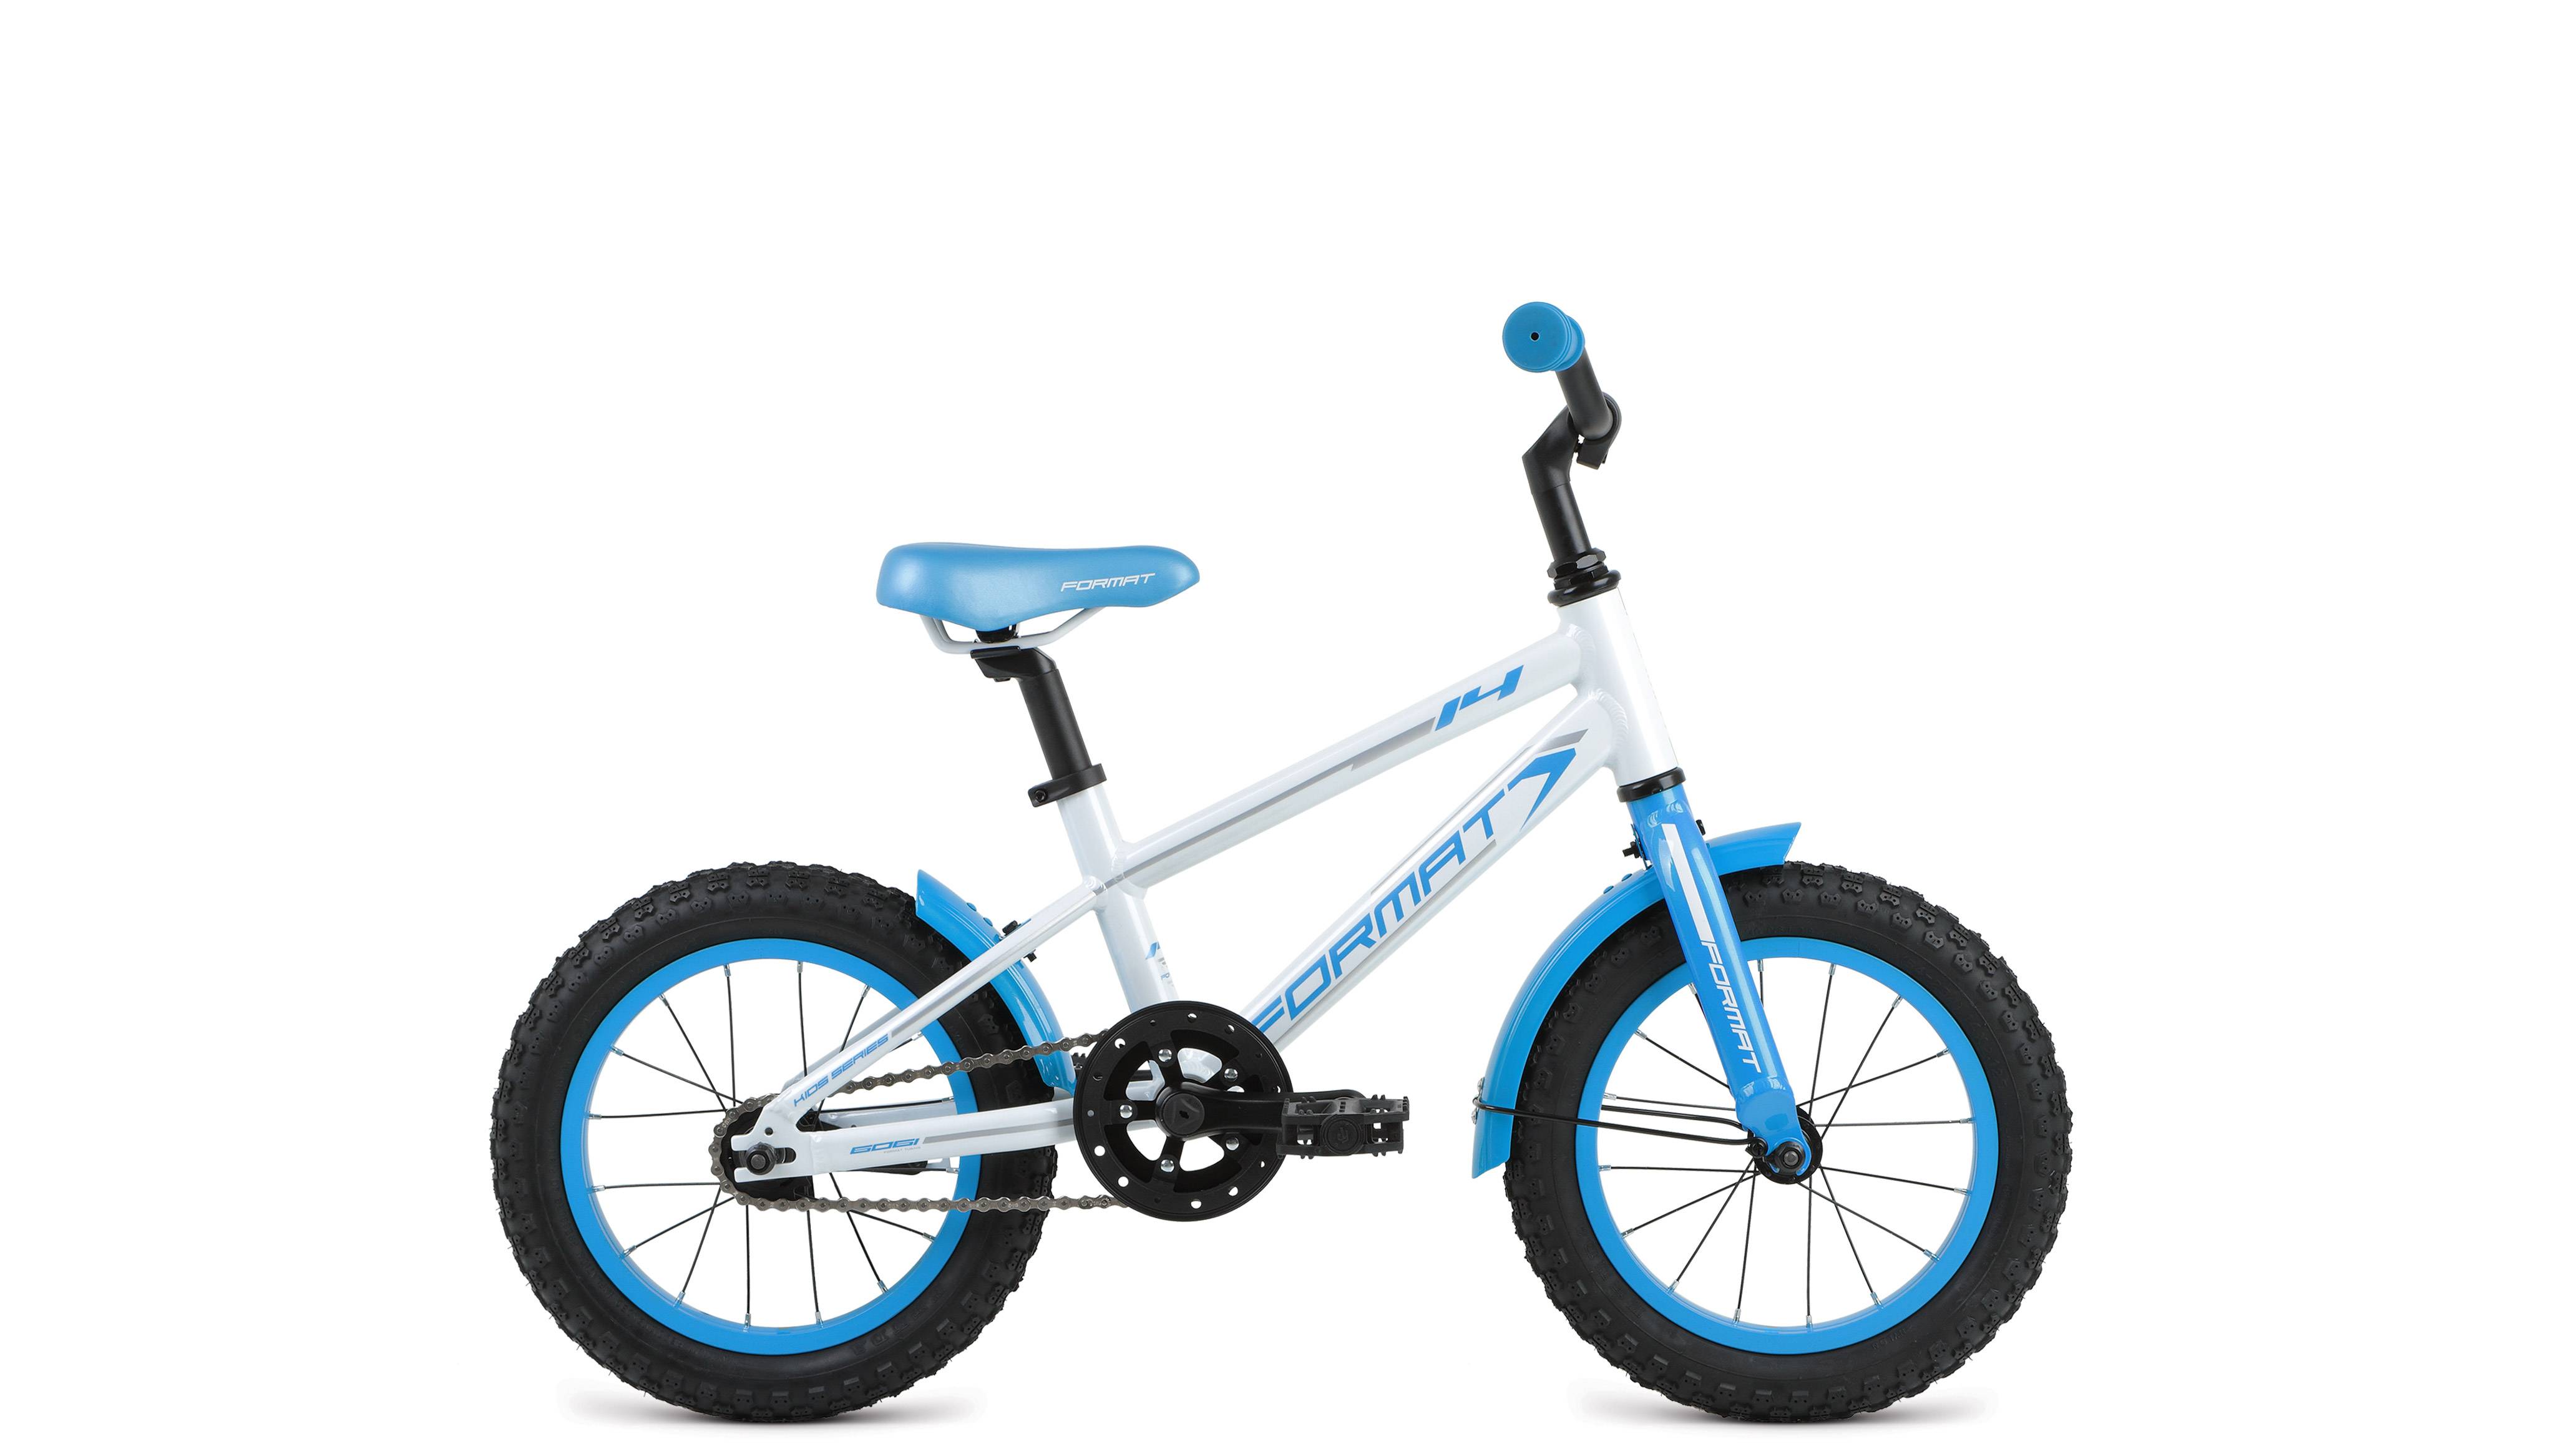 Детский Велосипед Format Kids 18 Купить Екатеринбург